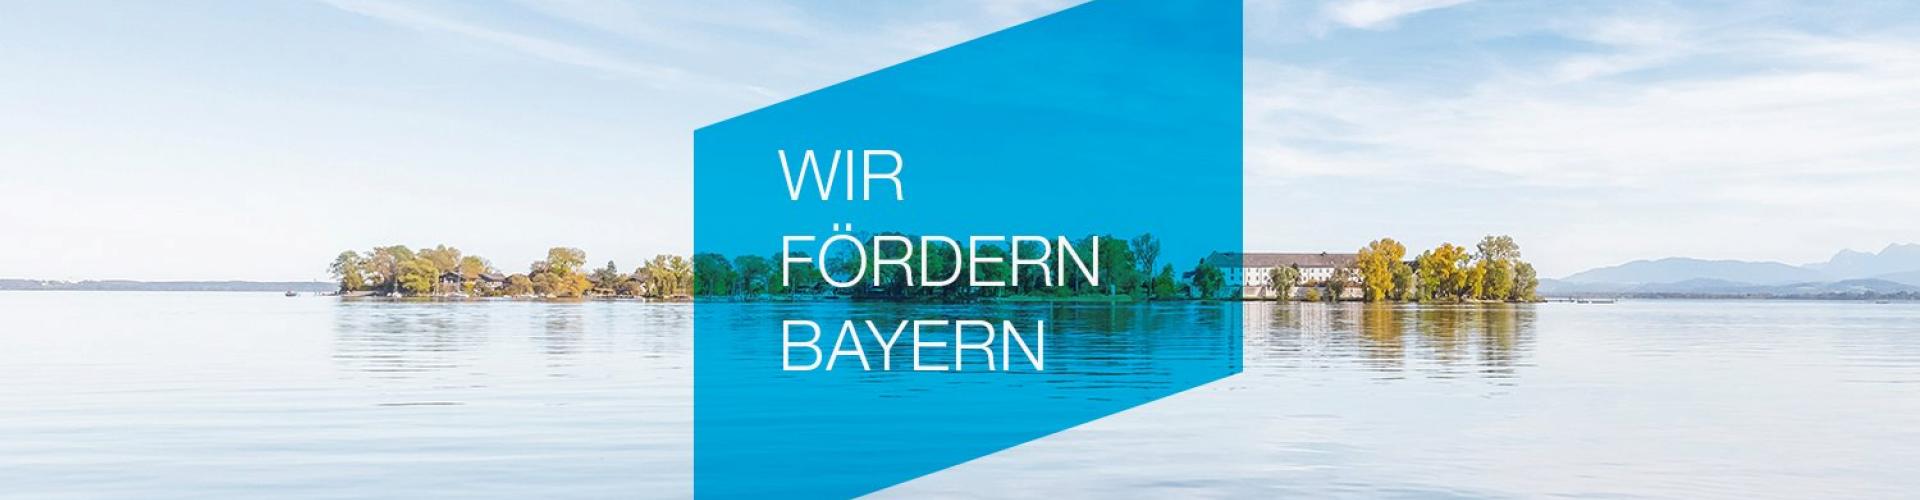 LfA Förderbank Bayern cover